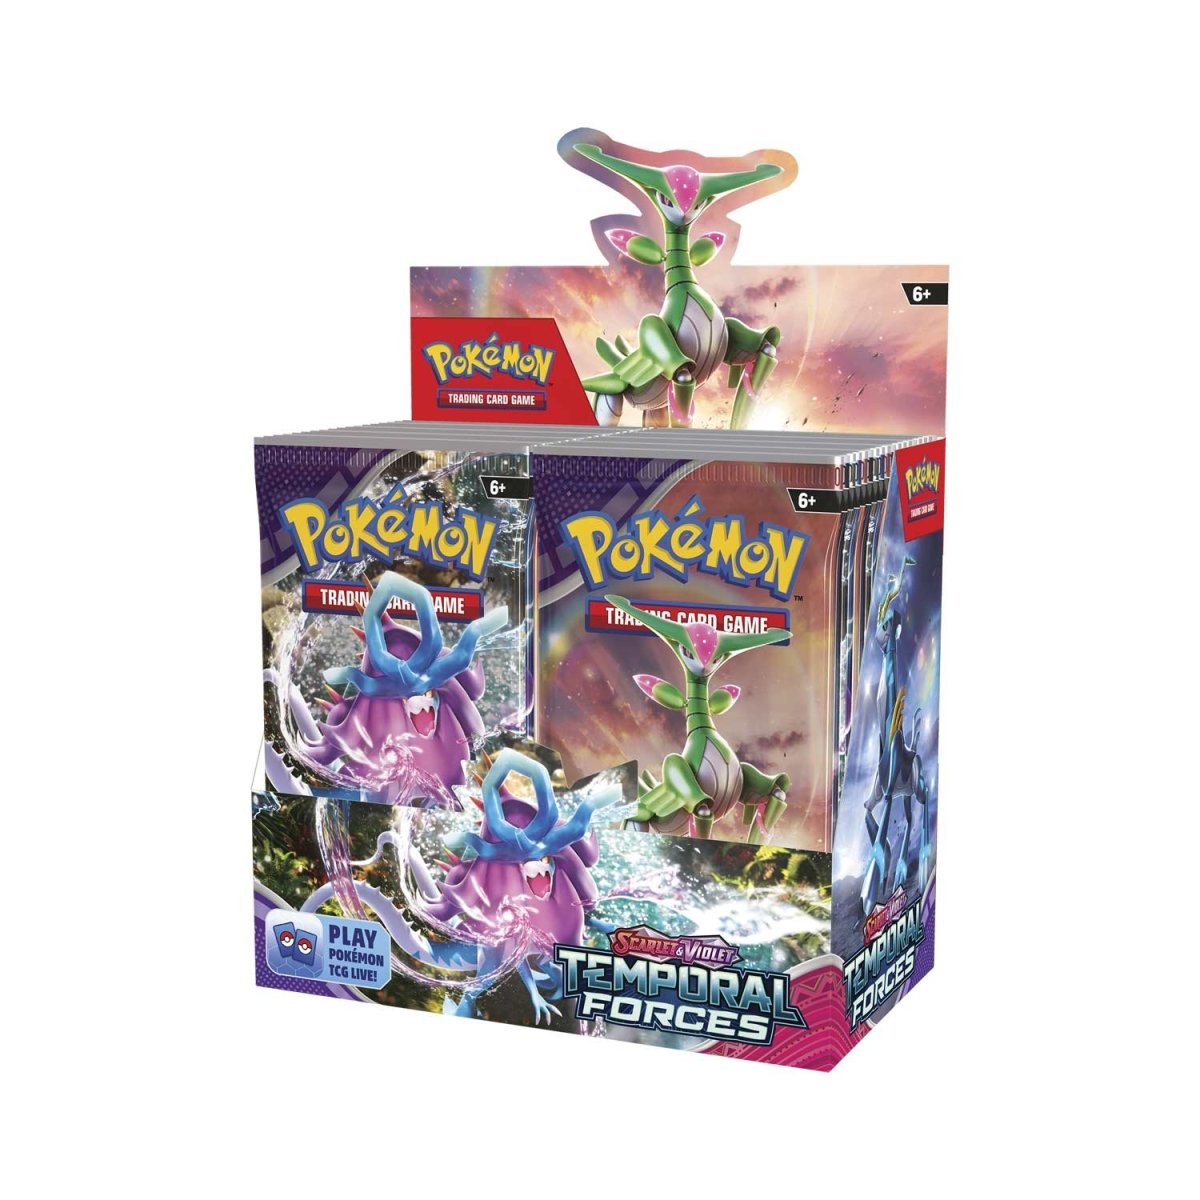 Pokémon - Temporal Forces Booster Box